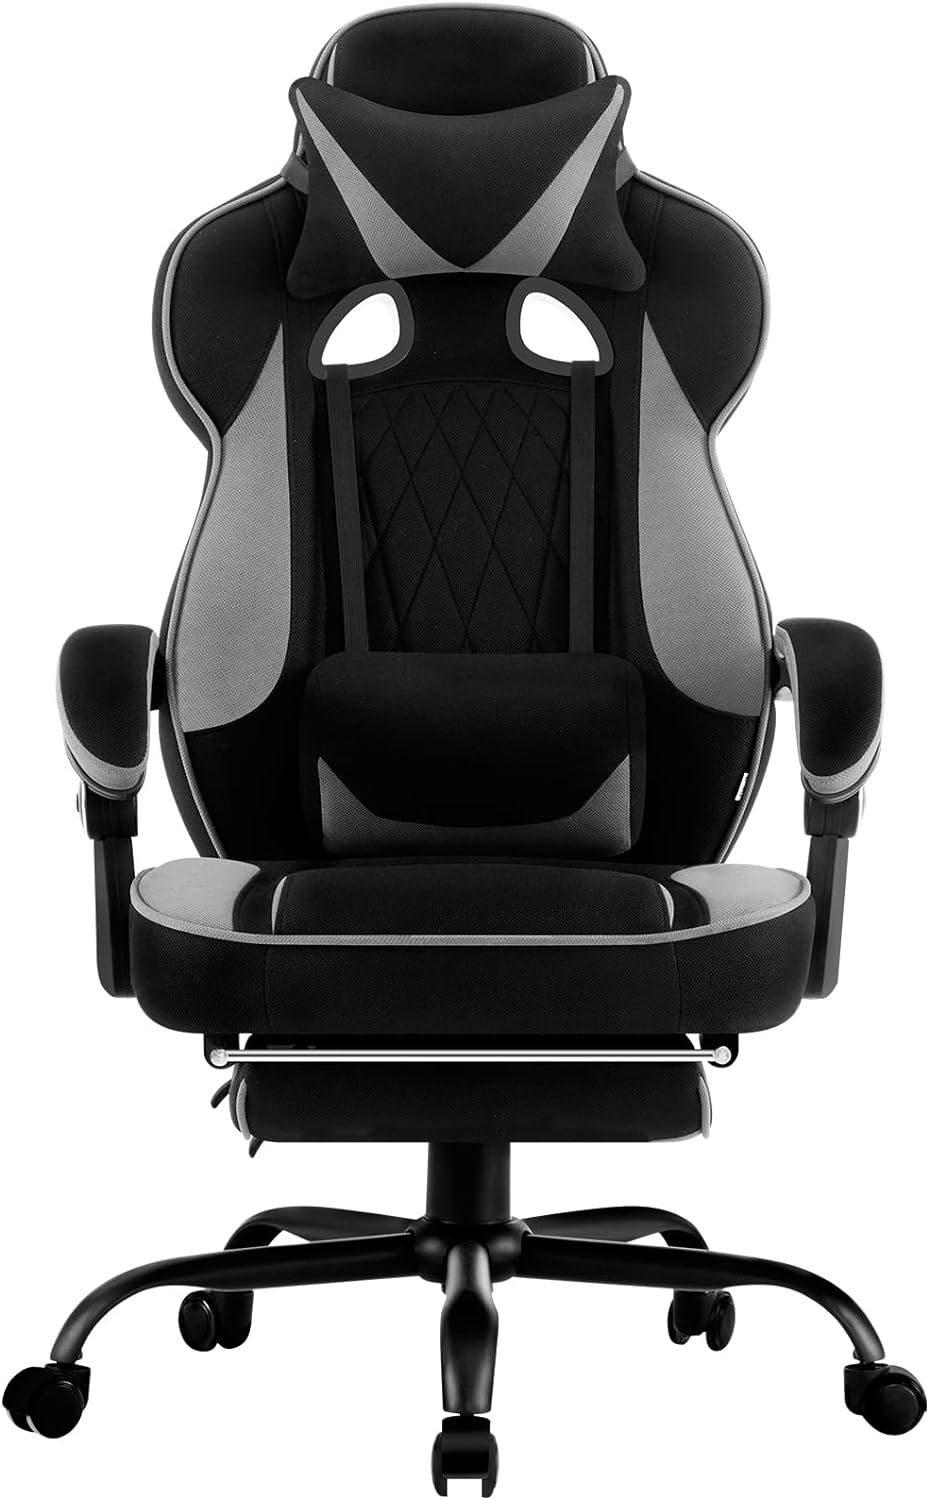 WOLTU GS03sw Gamingstoel met pocketveringkussen, ergonomisch, brede zitting, voetensteun, bureaustoel, gamingstoel, 150 kg belastbaar, computerstoel, draaibaar, Leathaire-stof, zwart + wit